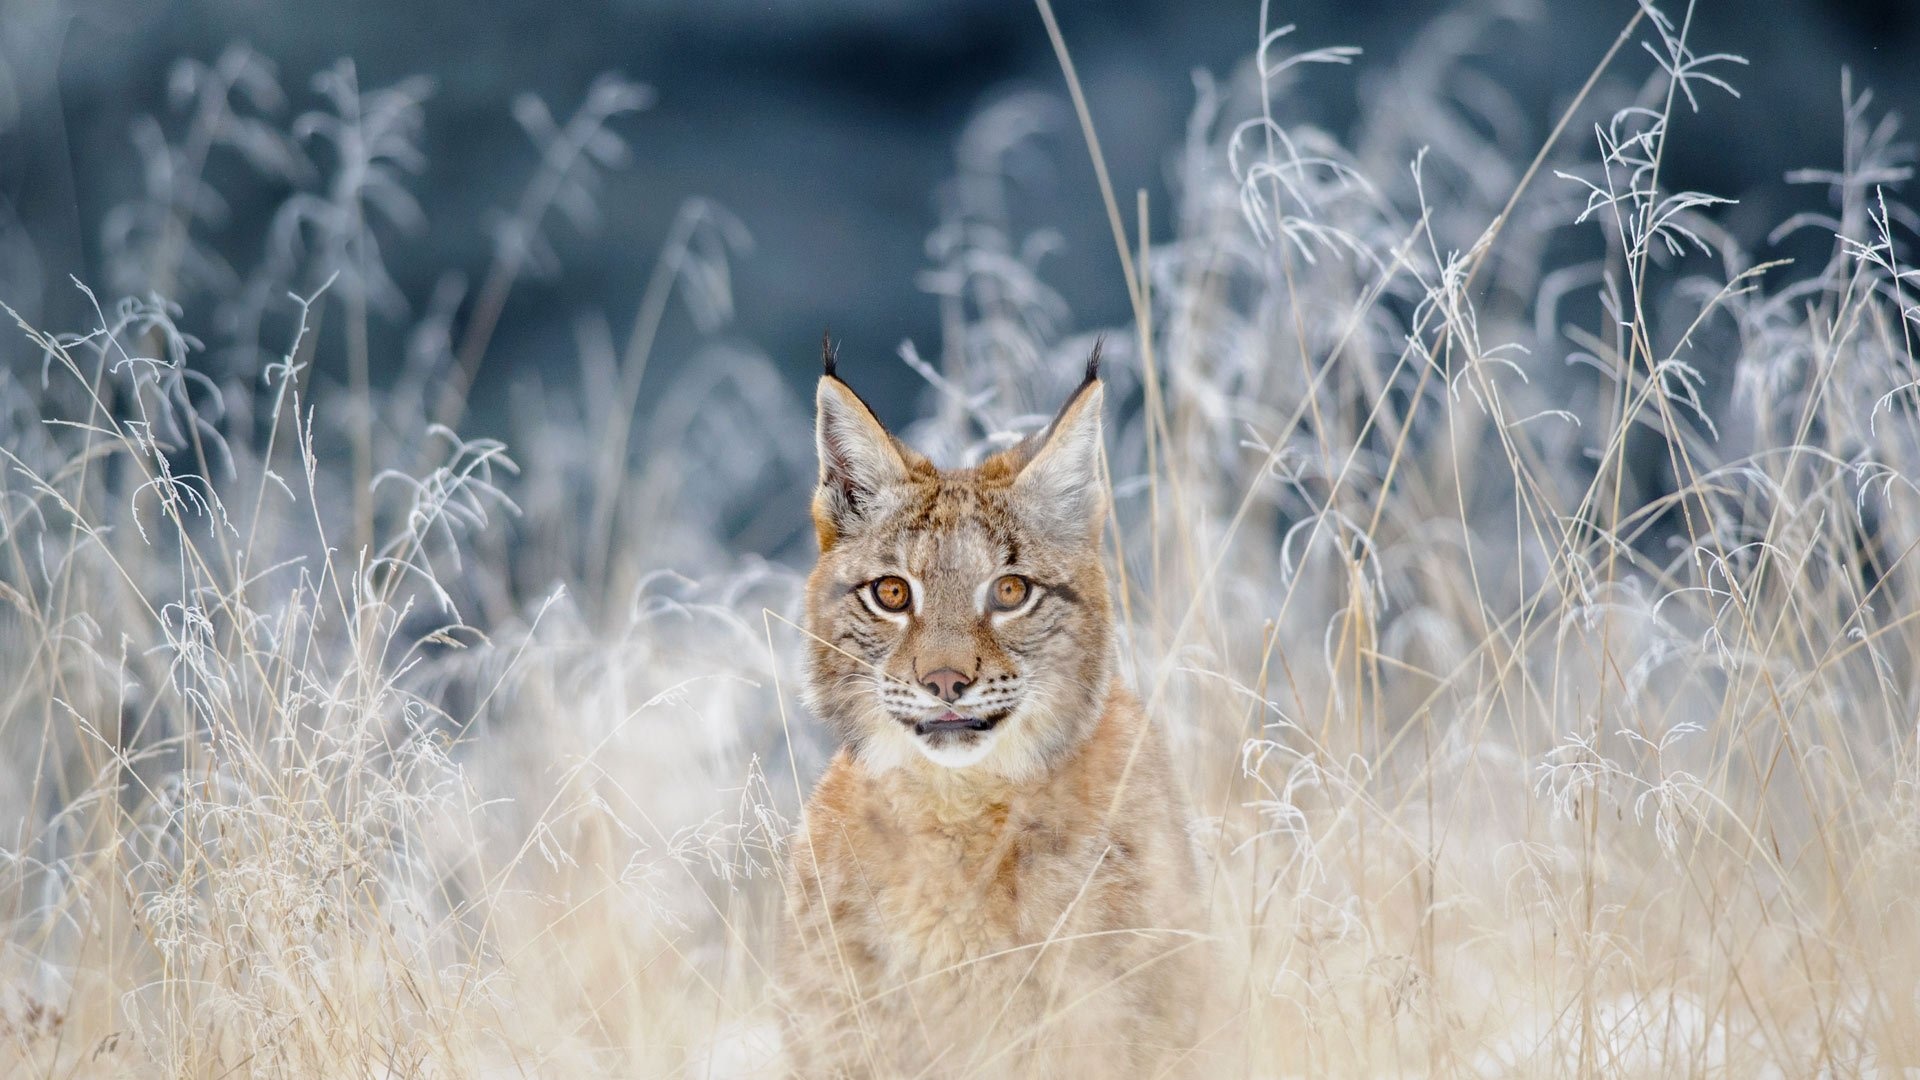 Lynx wonder, Striking wallpaper, Nature's beauty, Breathtaking feline, 1920x1080 Full HD Desktop